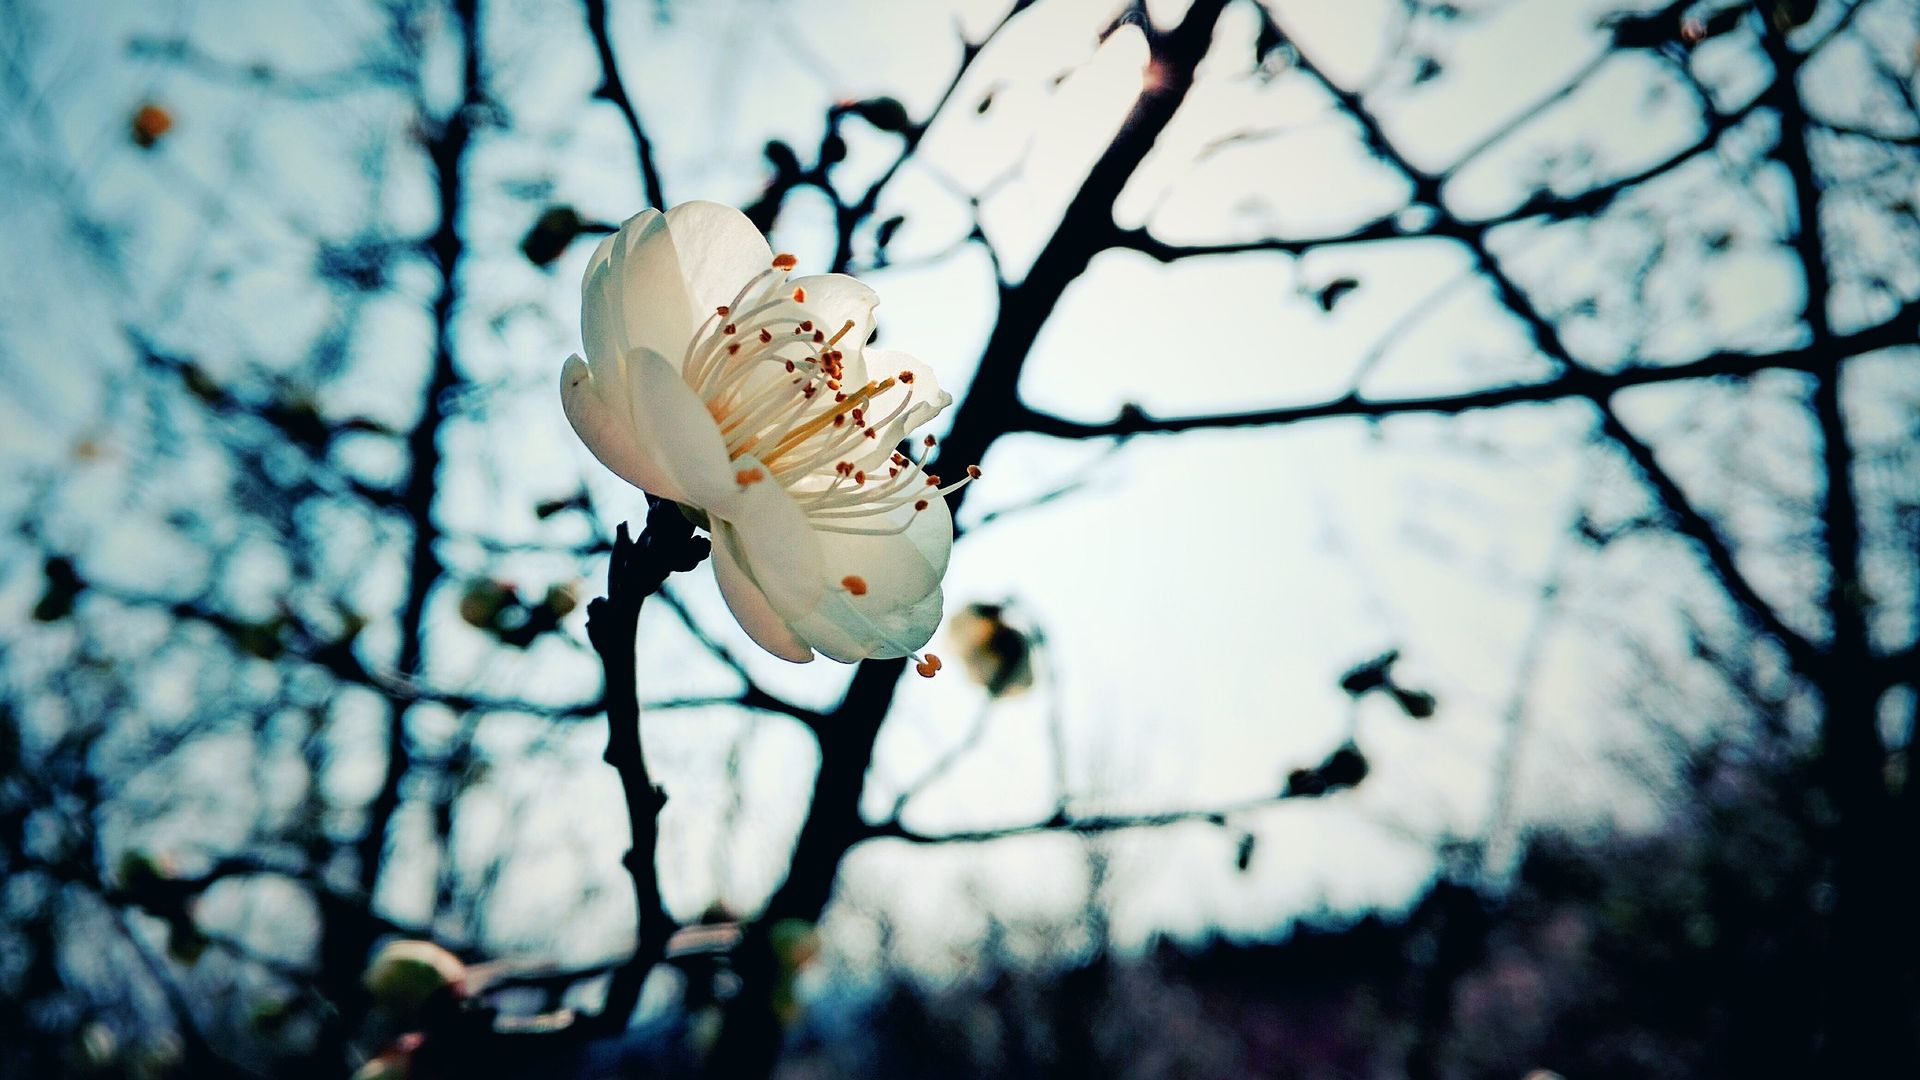 Desktop Wallpaper Plum Blossom, Winter, White Flower, Hd Image, Picture,  Background, Kkalka